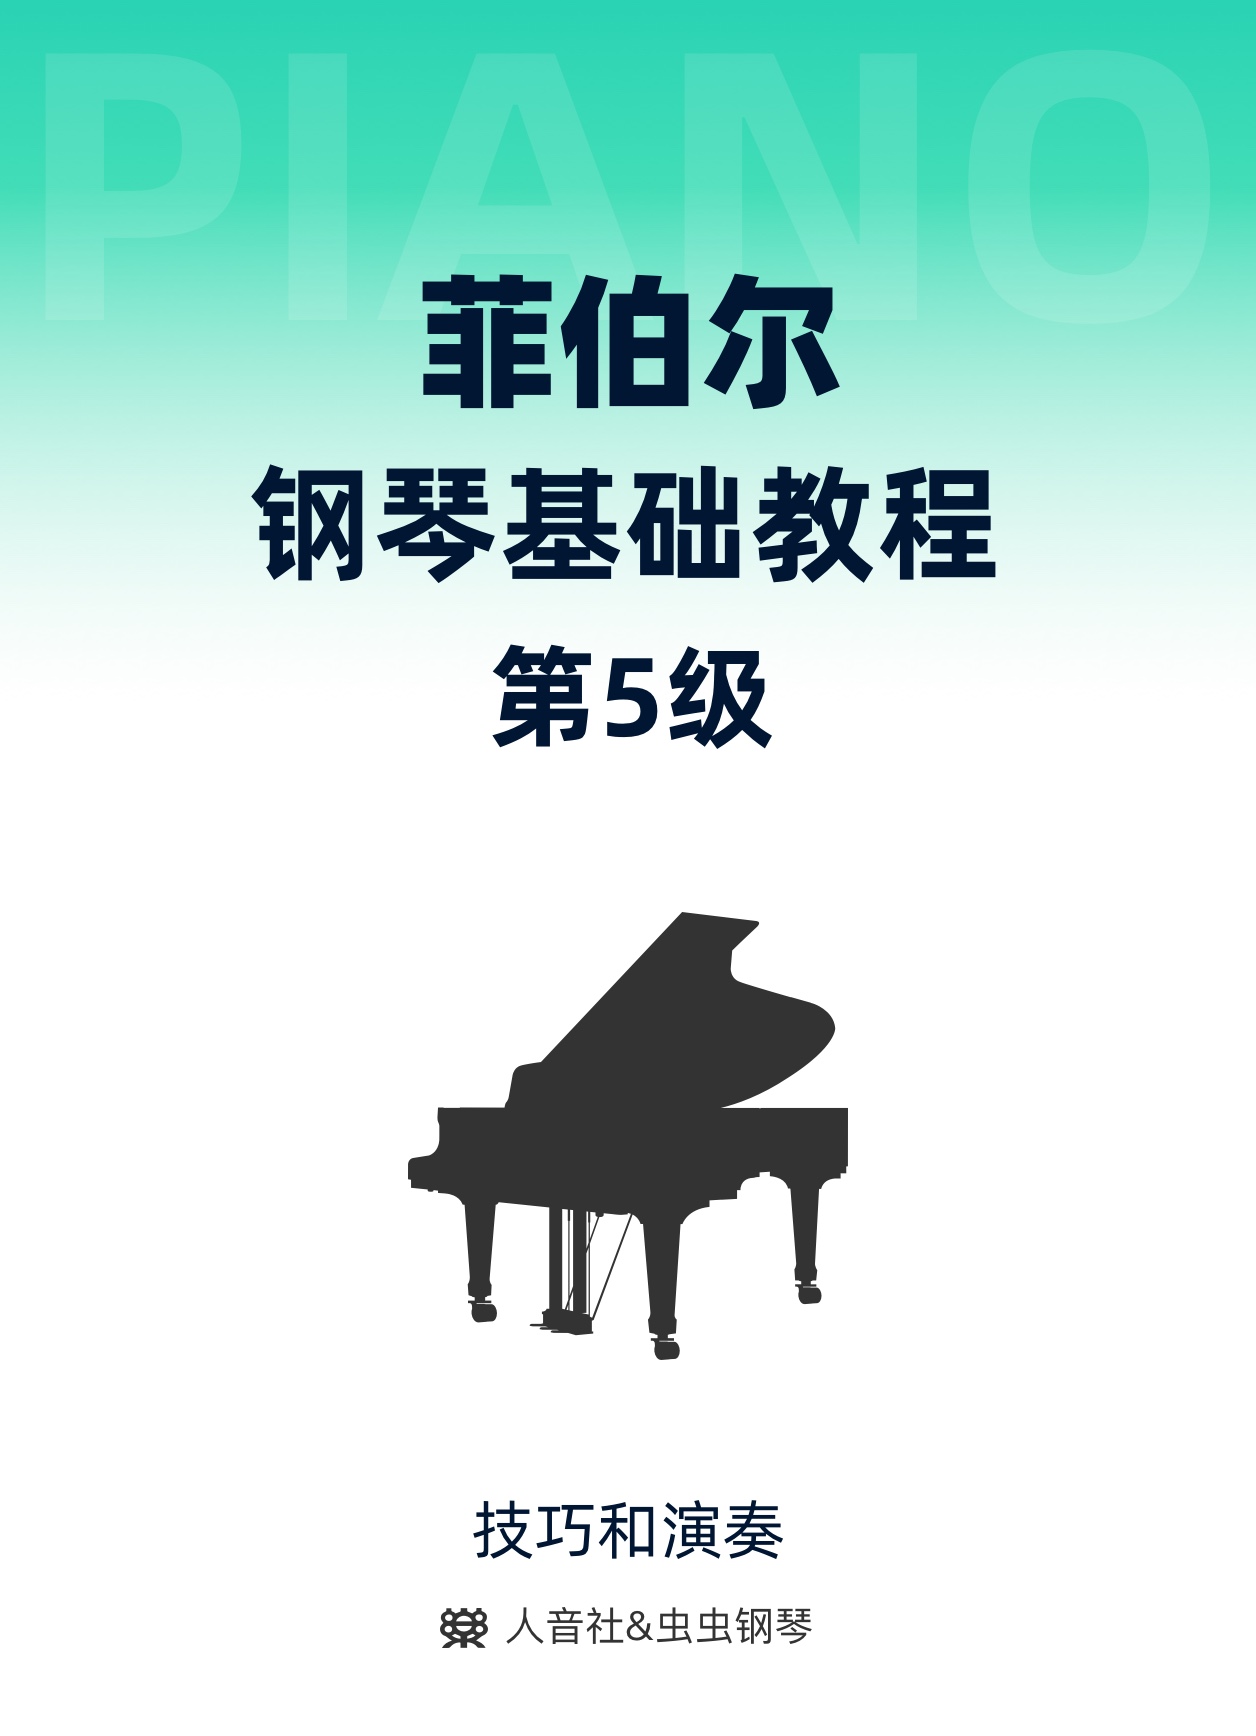 23-加线-下方加线上的音符02钢琴简谱 数字双手